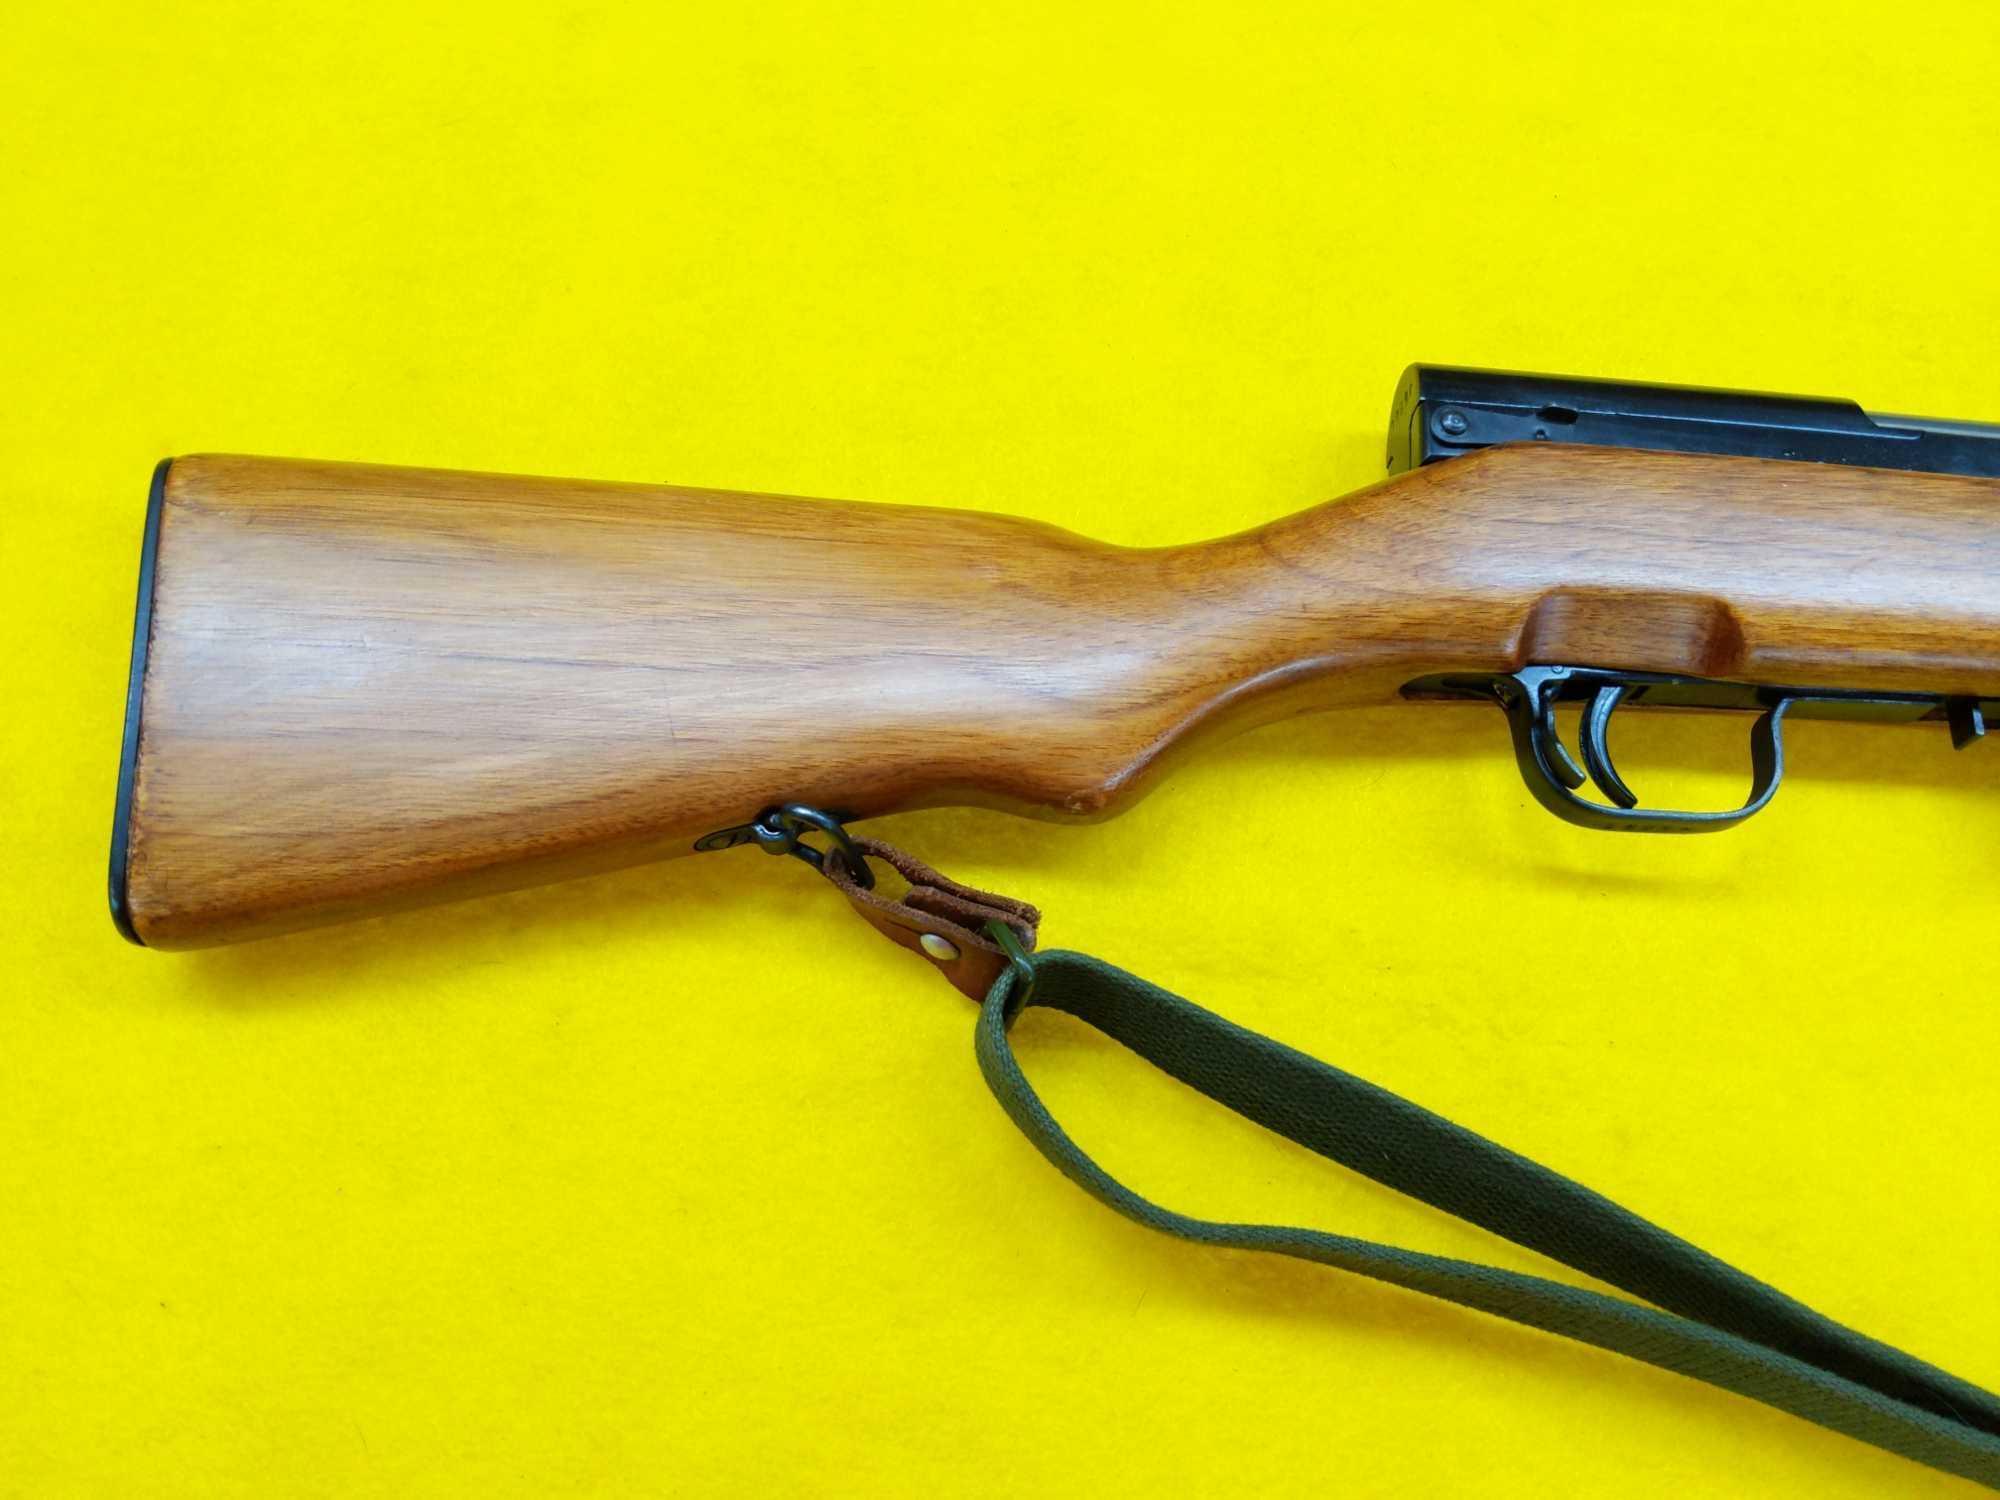 Chinese SKS, Model 56 Rifle, Sling, Spike Bayonet, 20 Round Magazine, SN-2400088A Matching